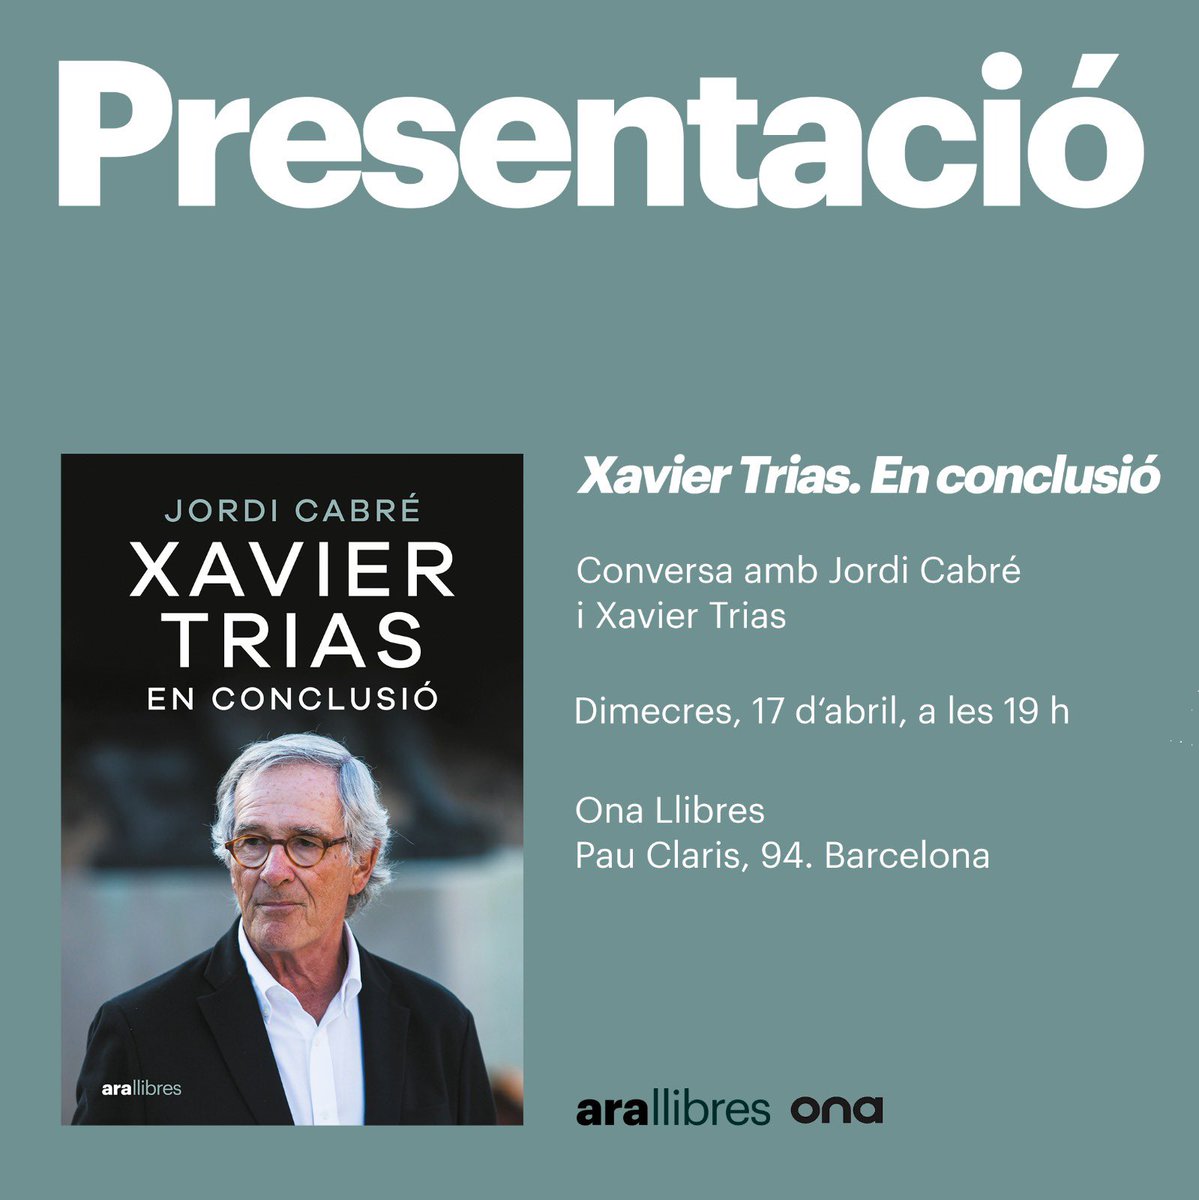 Avui al vespre, a les 19h, presentem a la llibreria @OnaLlibres de Pau Claris el llibre ‘Xavier Trias. En conclusió’, una conversa amb l’escriptor Jordi Cabré. Us hi esperem!